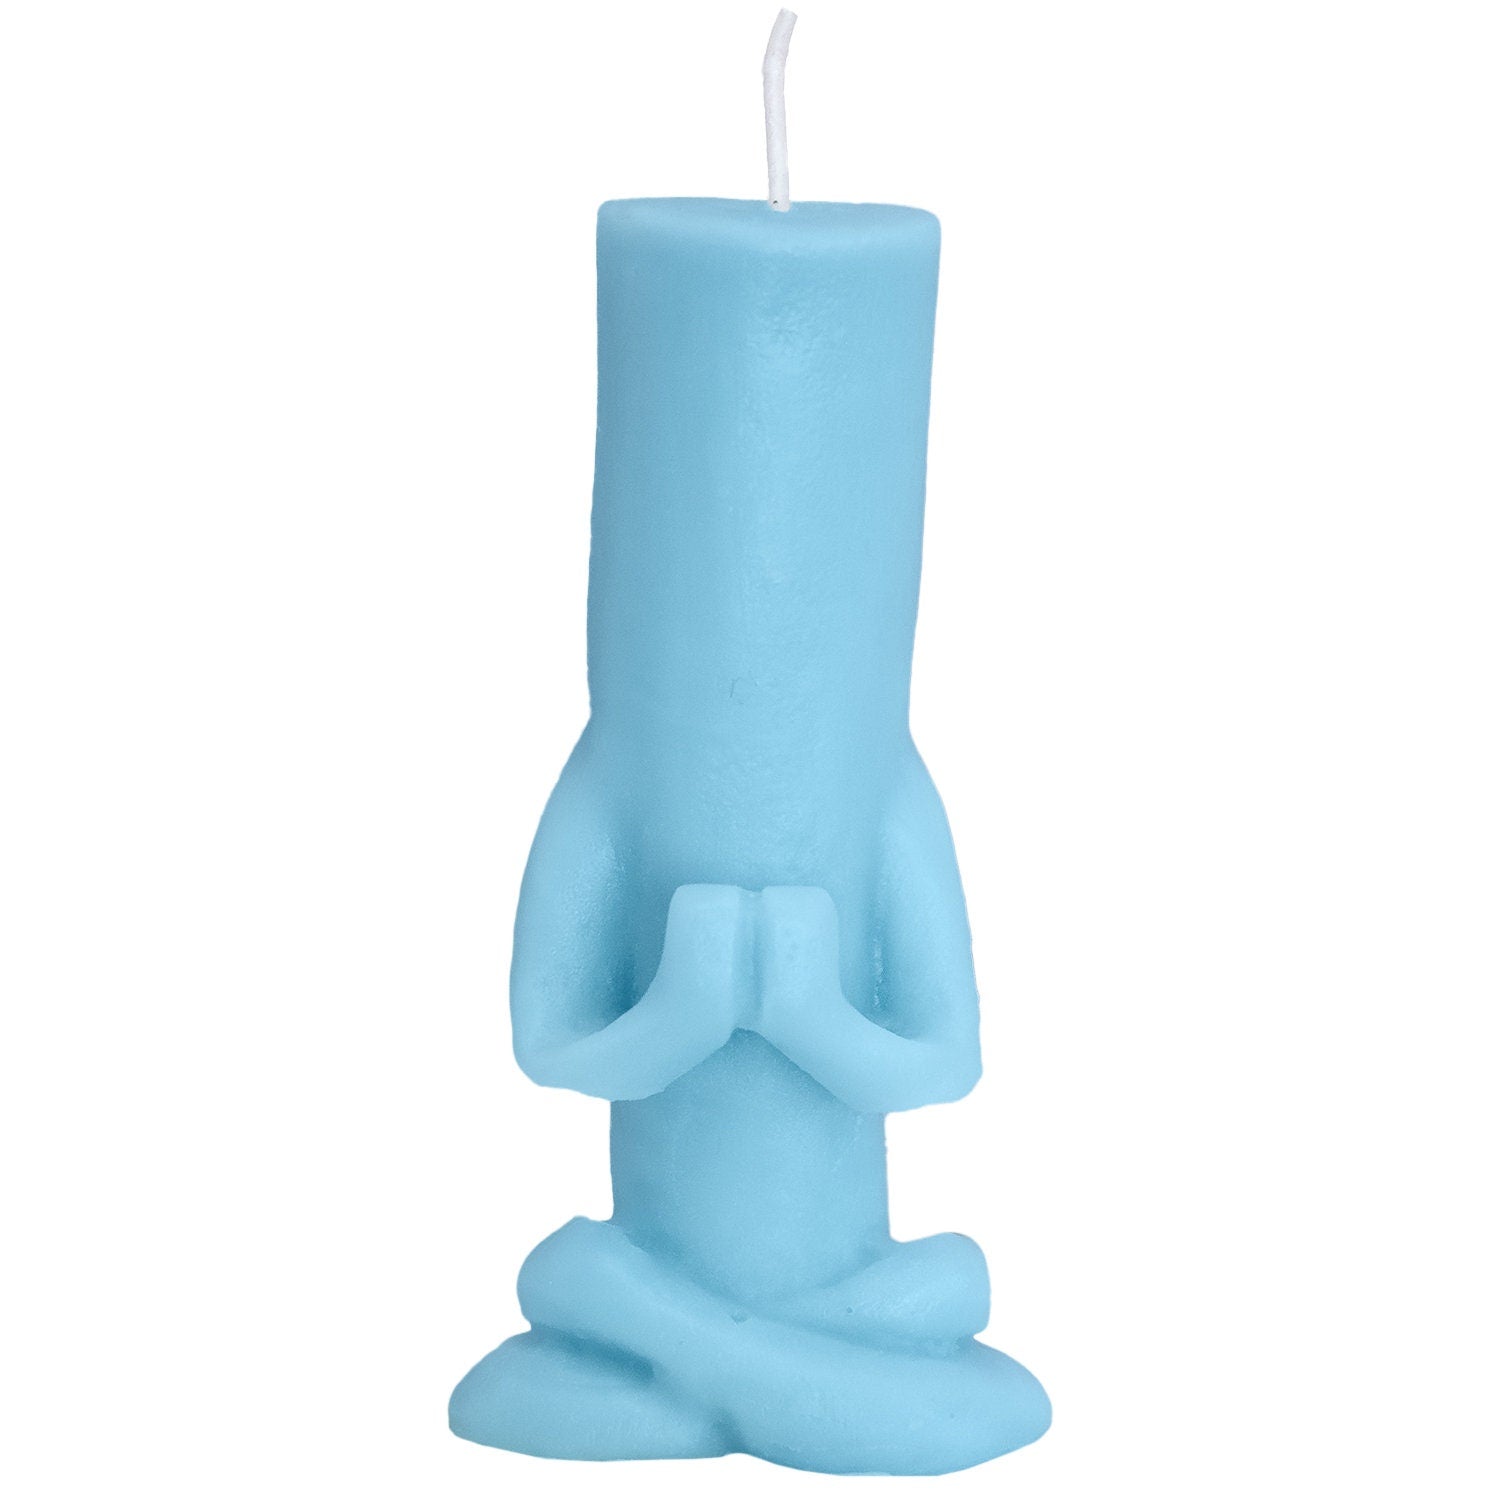 Yoga Pillar Candle / Yoga Candle / Yogi / Namaste / Pillar Candle / Yoga Lovers / Cute Candle